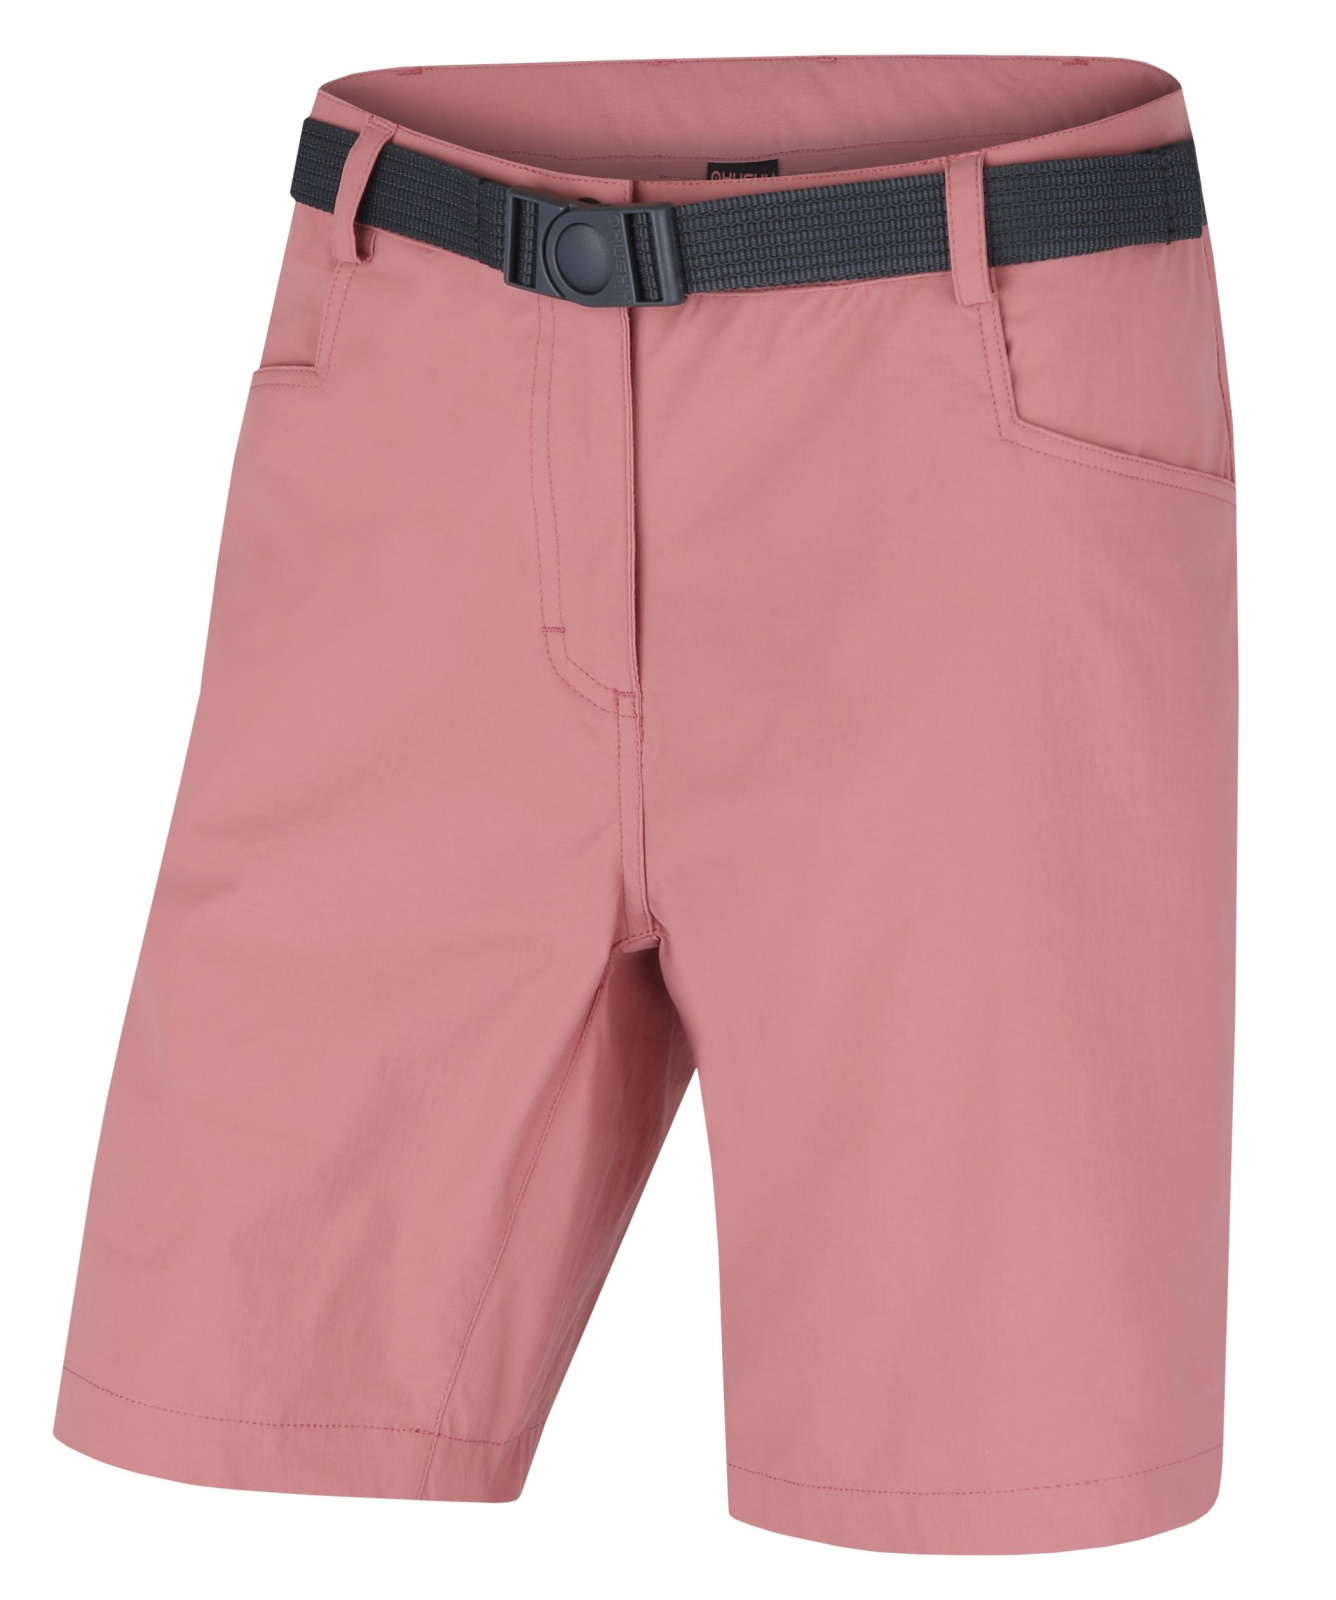 Husky Dámské šortky Kimbi L faded pink Velikost: L dámské šortky